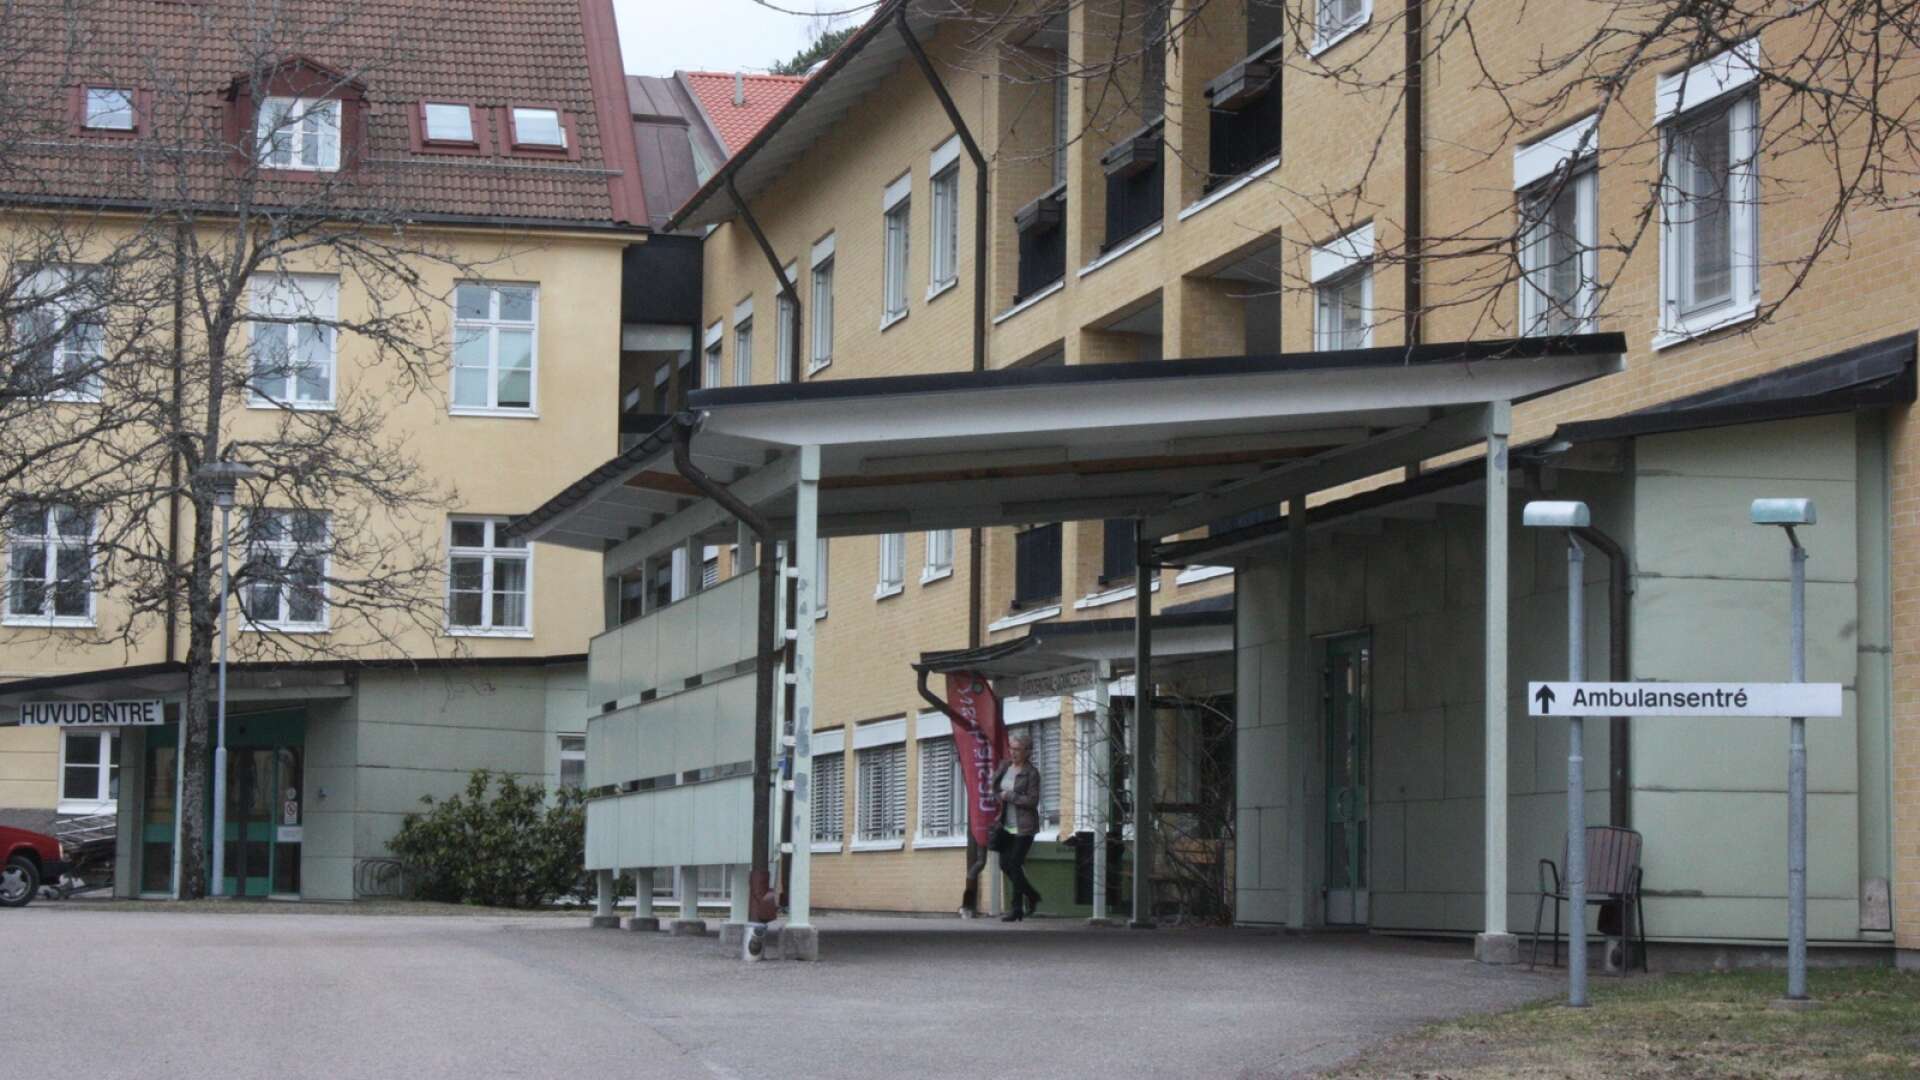 En kollega körde omgående den skadade personen till akutmottagningen på Dalslands sjukhus. 